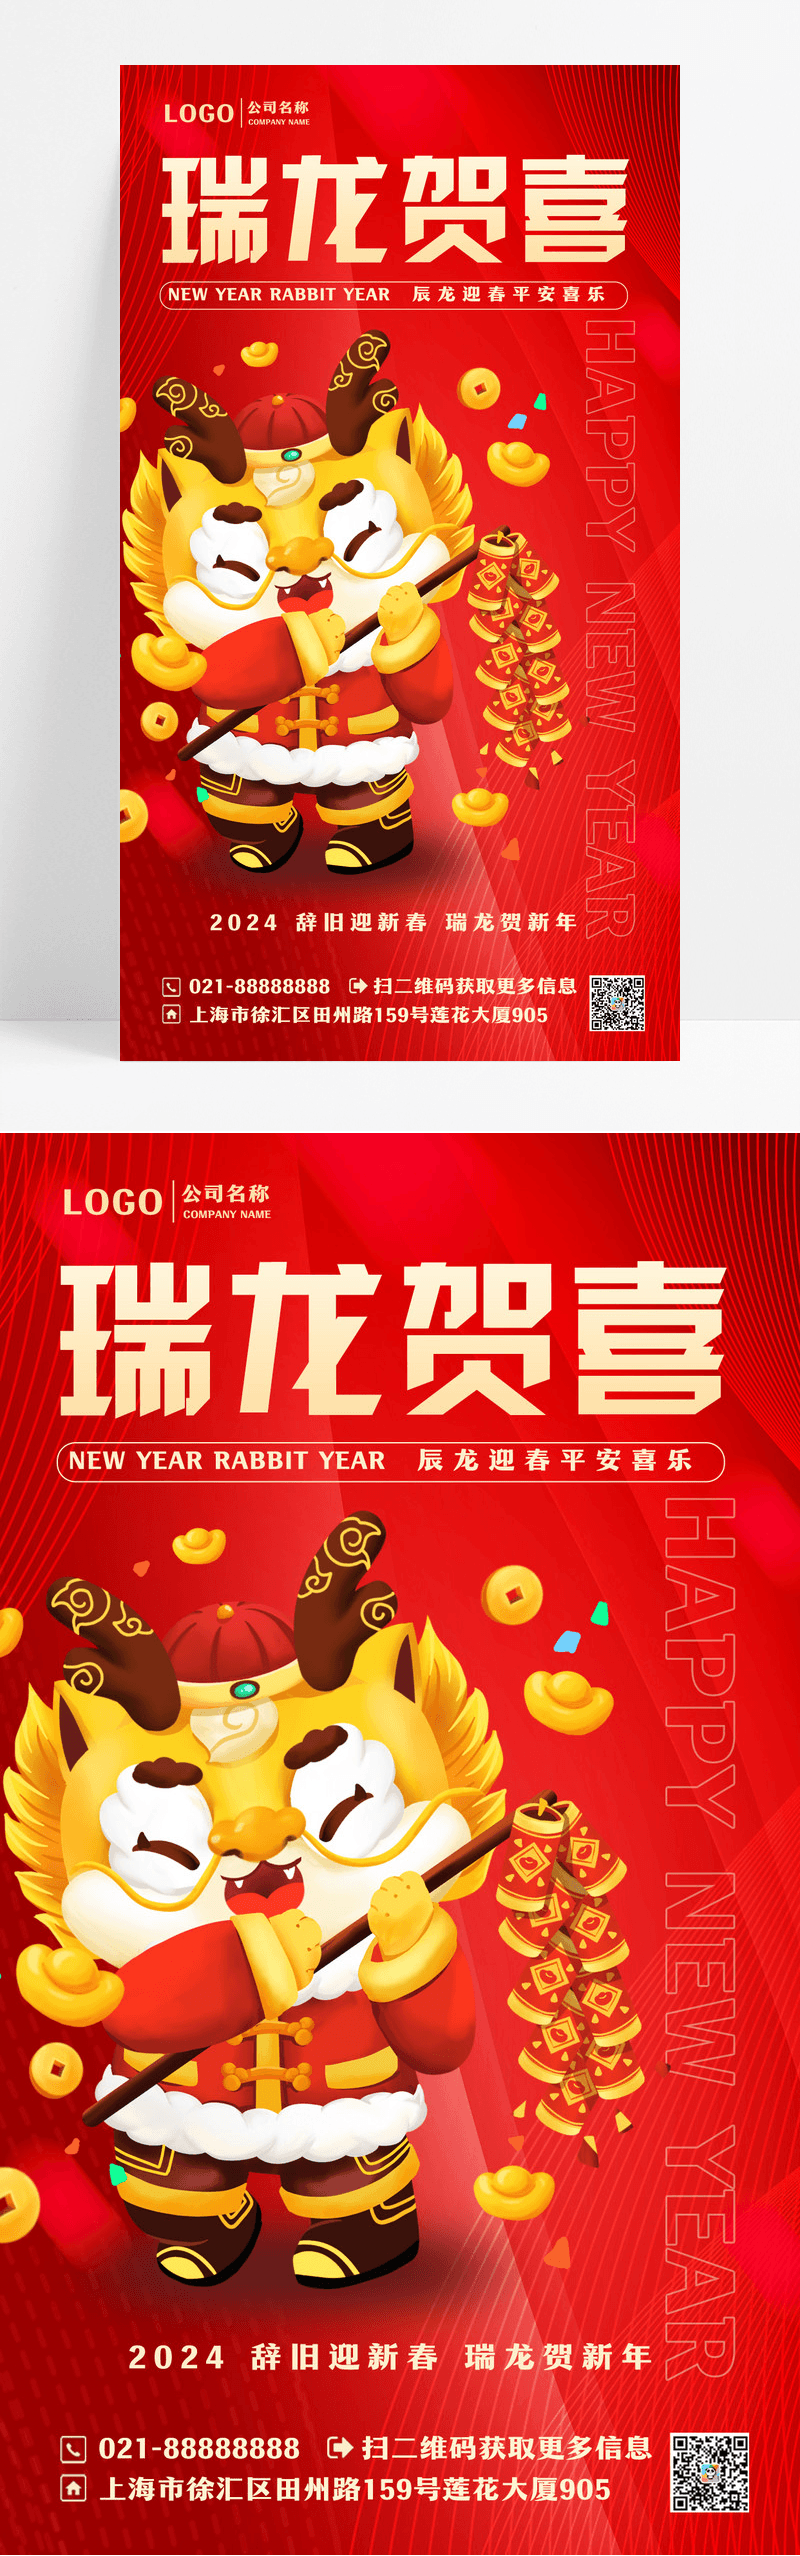 红色3D简约瑞龙贺喜龙年手机海报设计